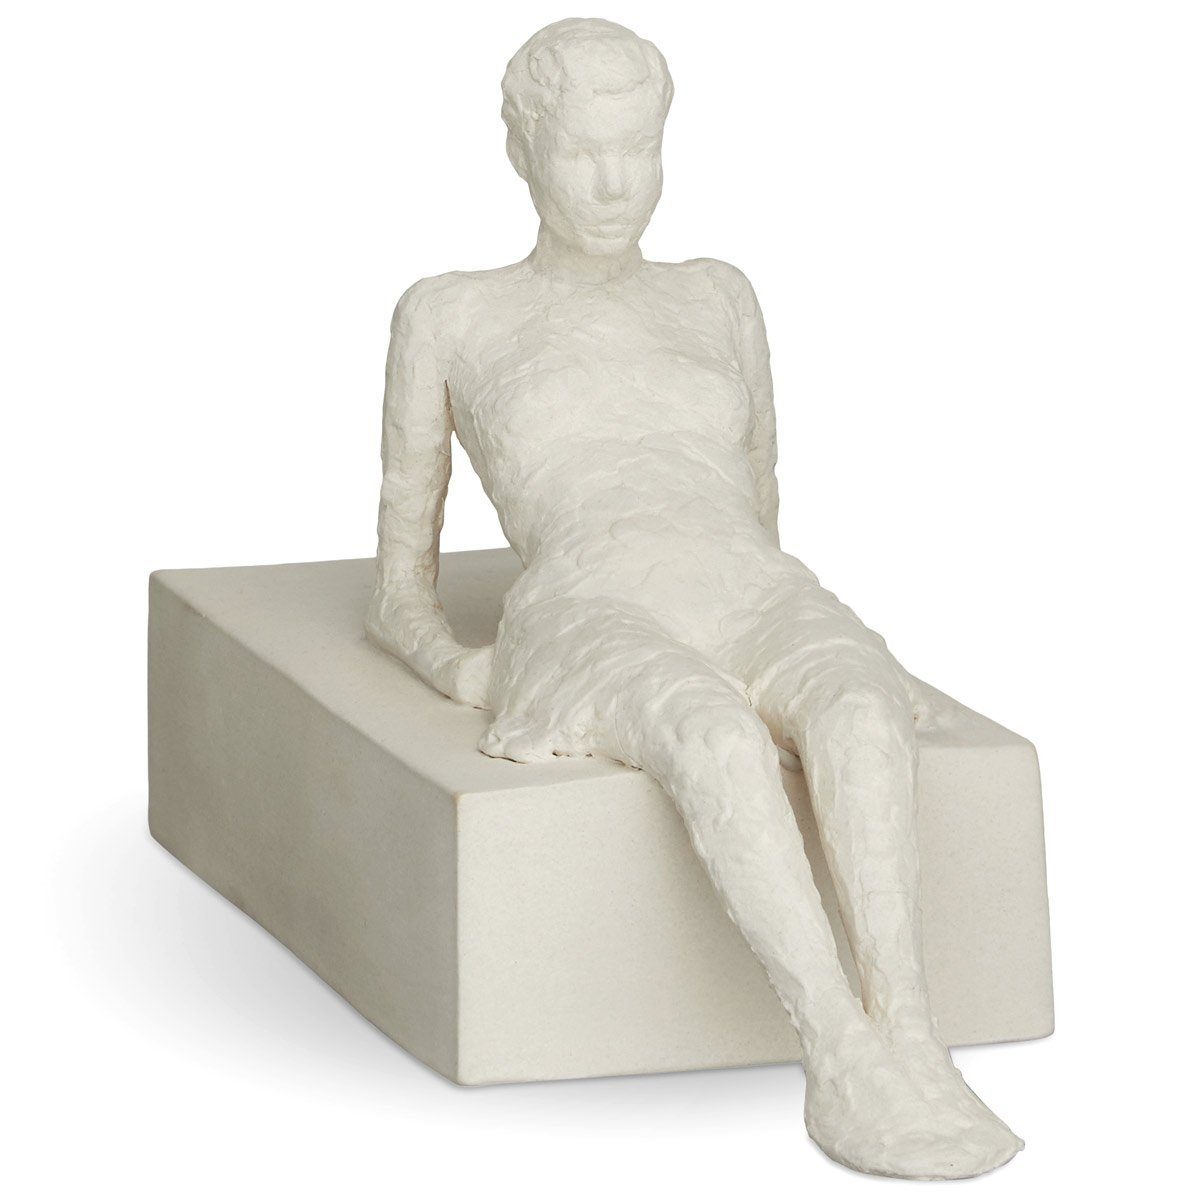 (Die Keramik Skulptur Aufmerksame); Bildhauerin von Dekofigur der aus Serie One Attentive The Bjelke 'Character' Kähler Malene